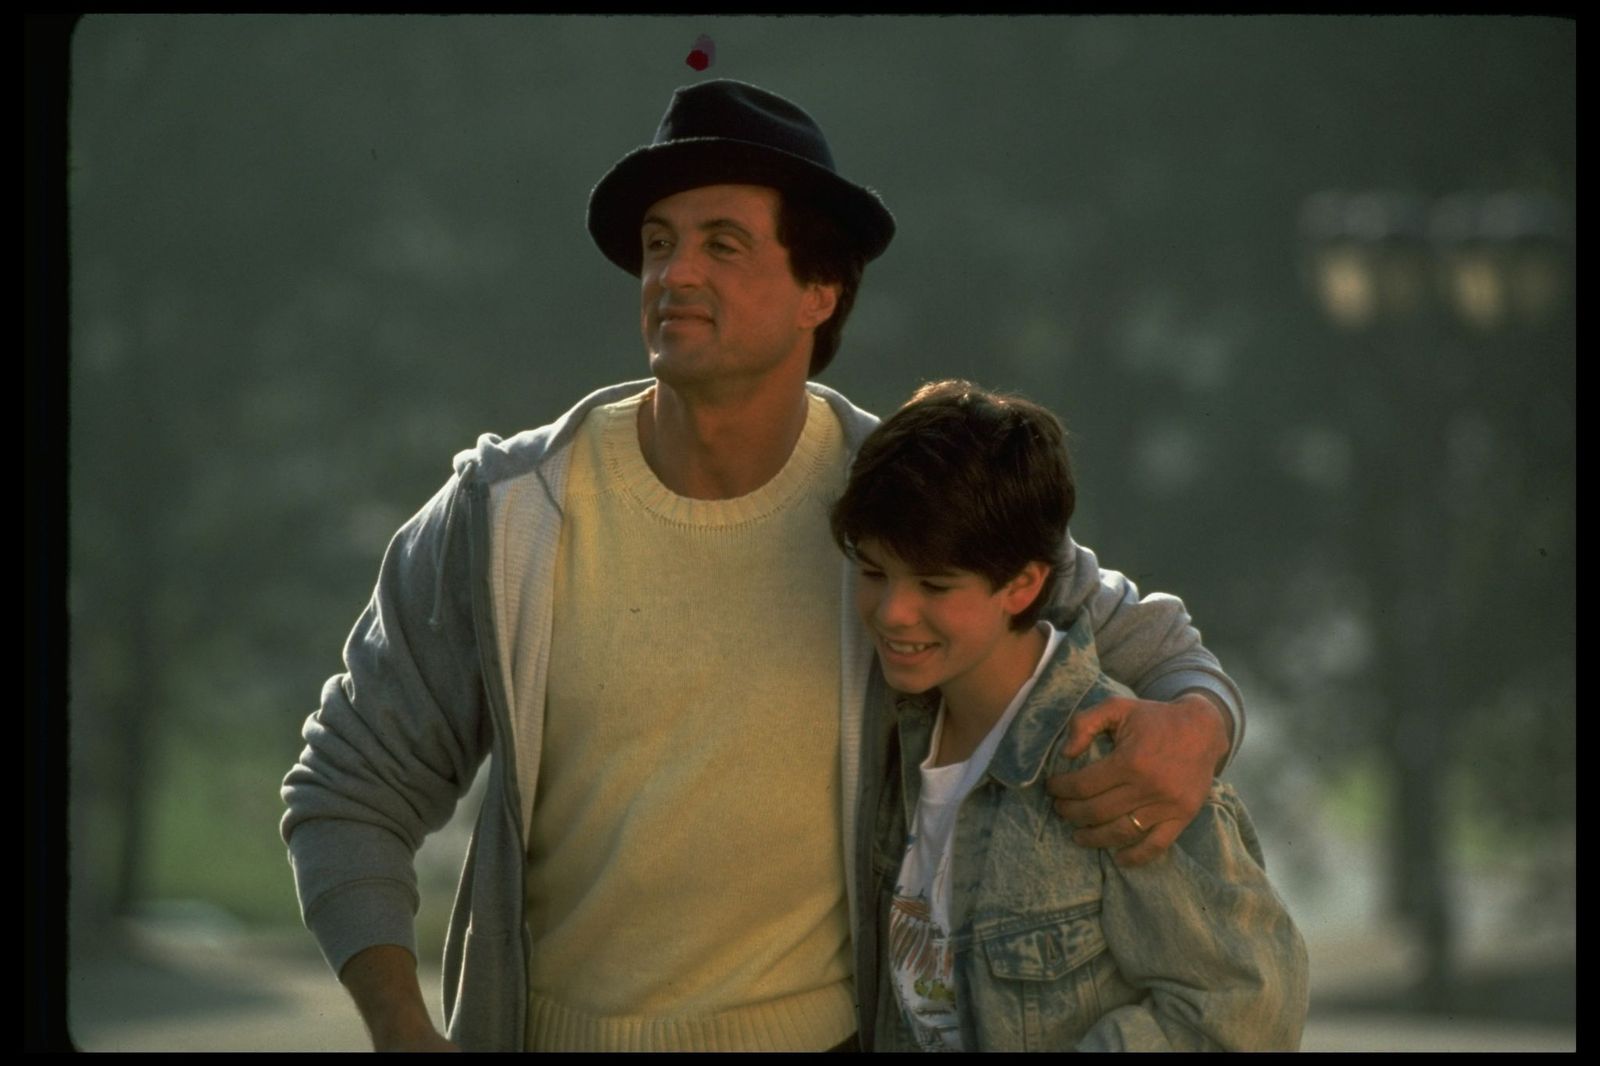 Sylvester Stallone con su brazo alrededor de su hijo, Sage Stallone, en una escena de la película "Rocky V". | Foto: Getty Images